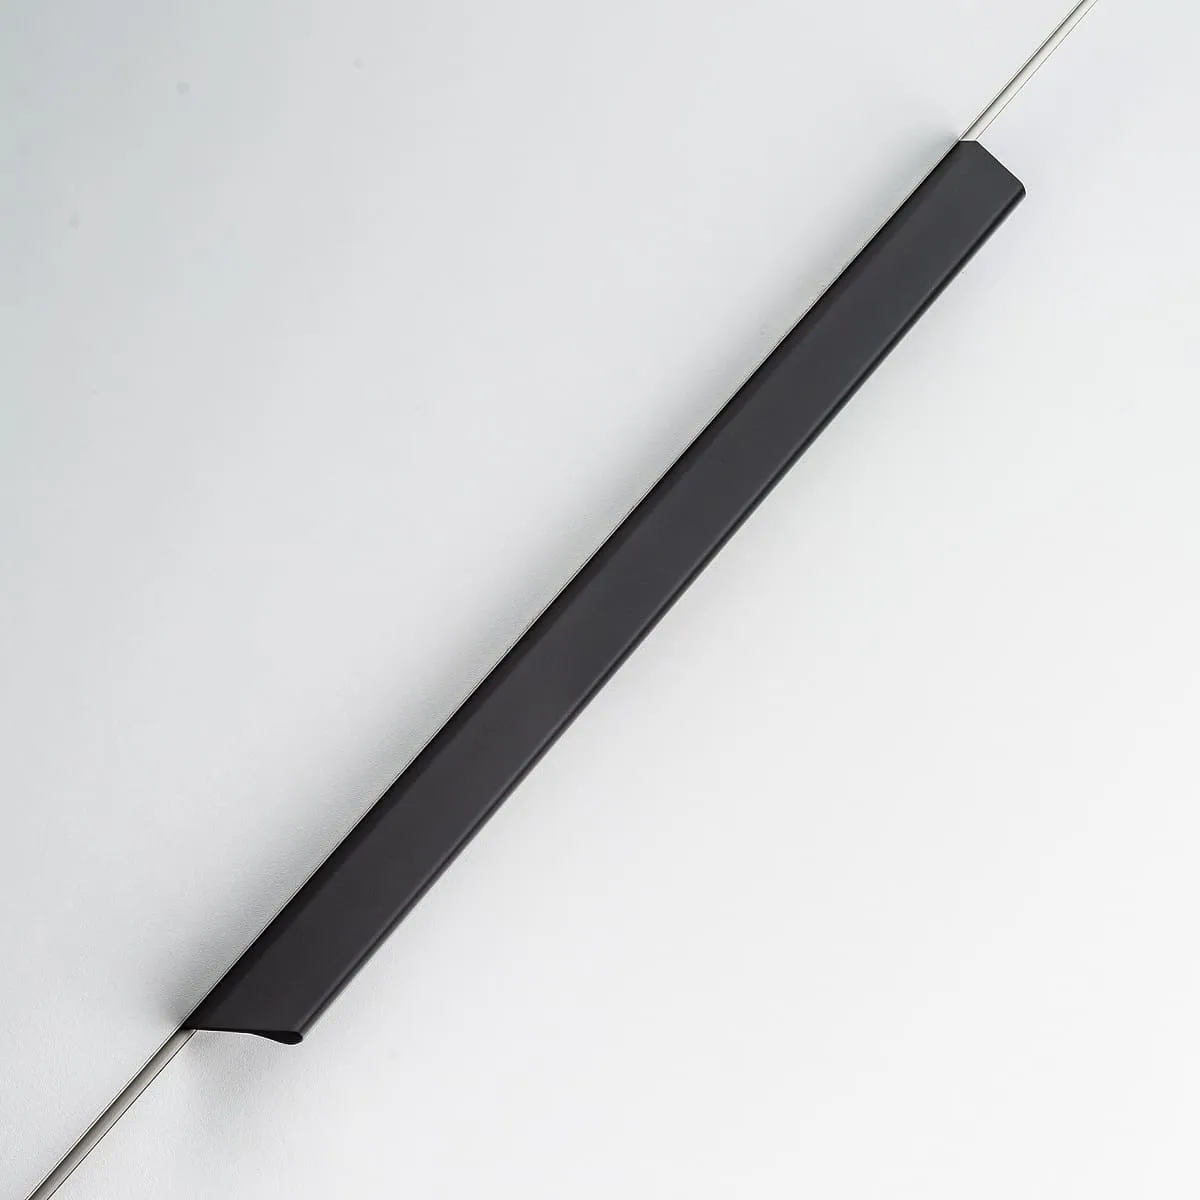 Ручка мебельная алюминиевая TREX CROSS 320/350 черный матовый GTV UA-TREX-CROSS-320-20M 26182 Ручка мебельная алюминиевая TREX CROSS 320/350 черный матовый - фото 4